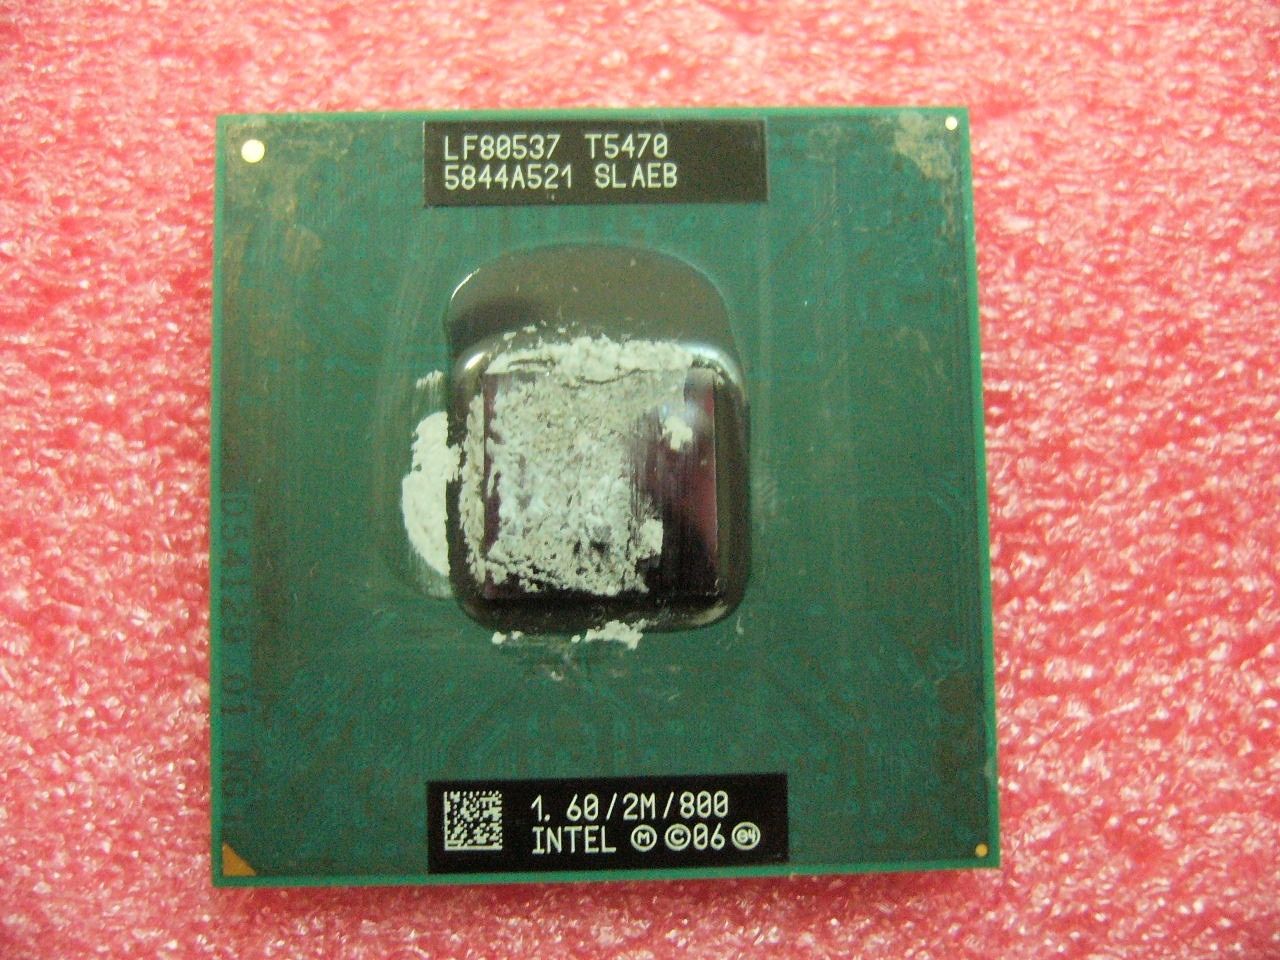 QTY 1x INTEL Core 2 Duo T5470 1.6 GHz/2M/800Mhz Processor for Laptop SLAEB - zum Schließen ins Bild klicken